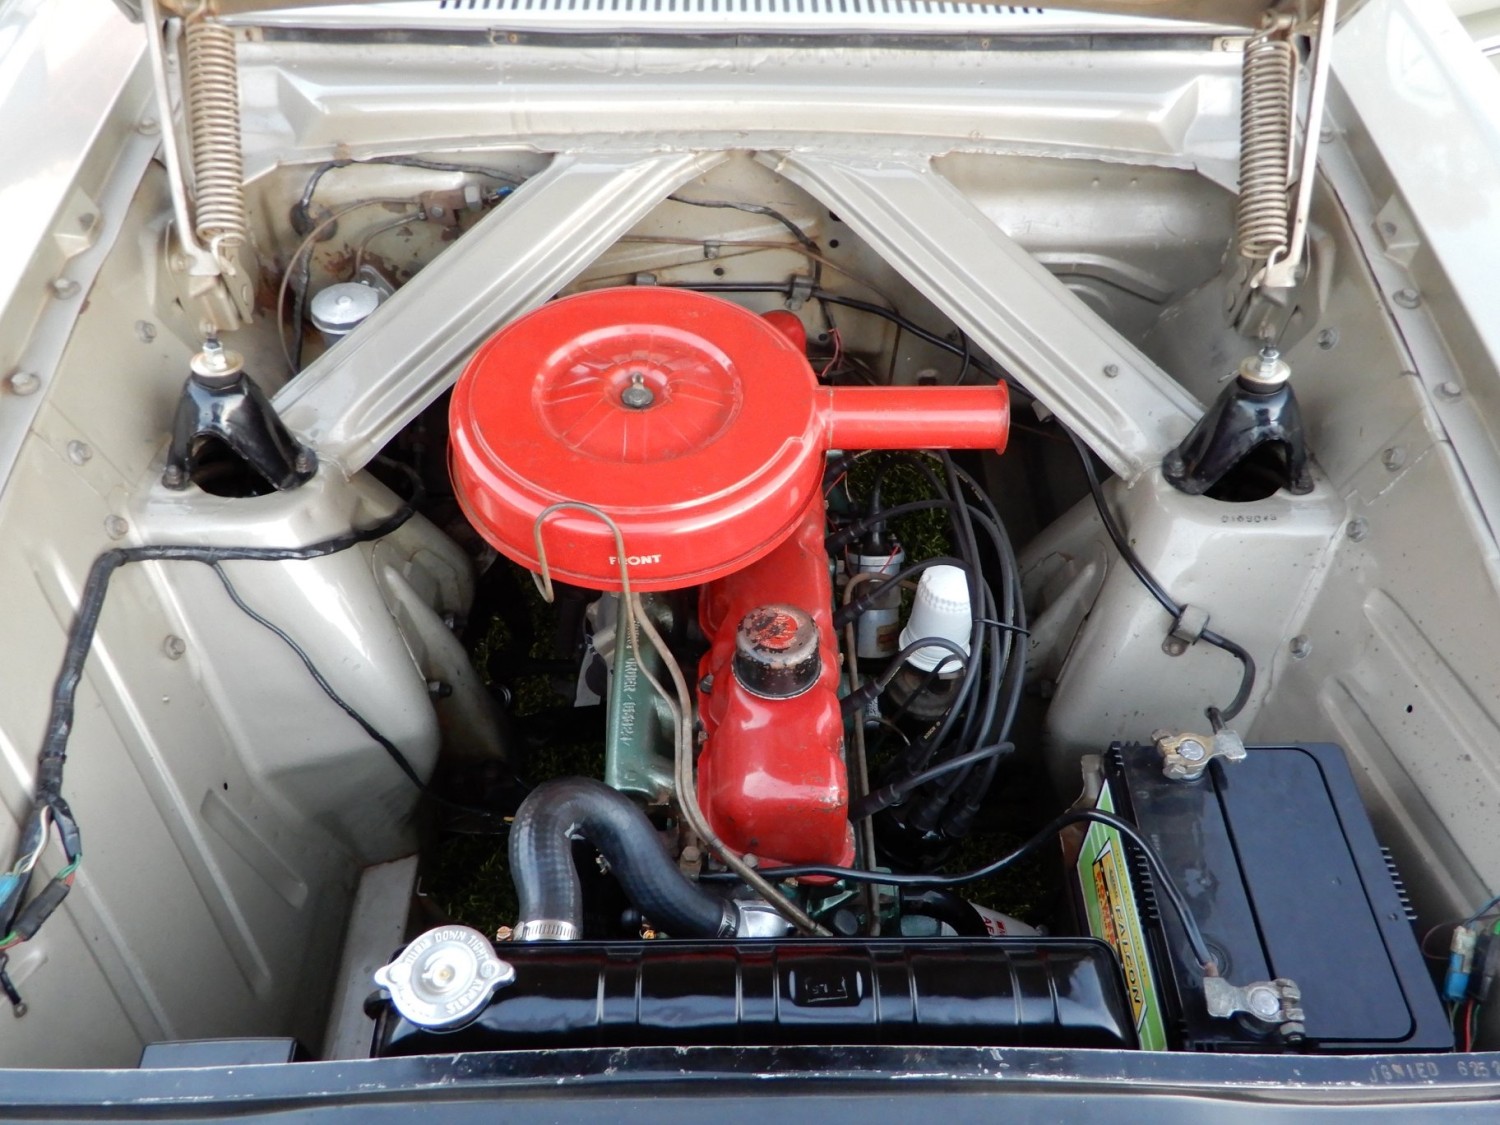 1965 Ford Falcon xp